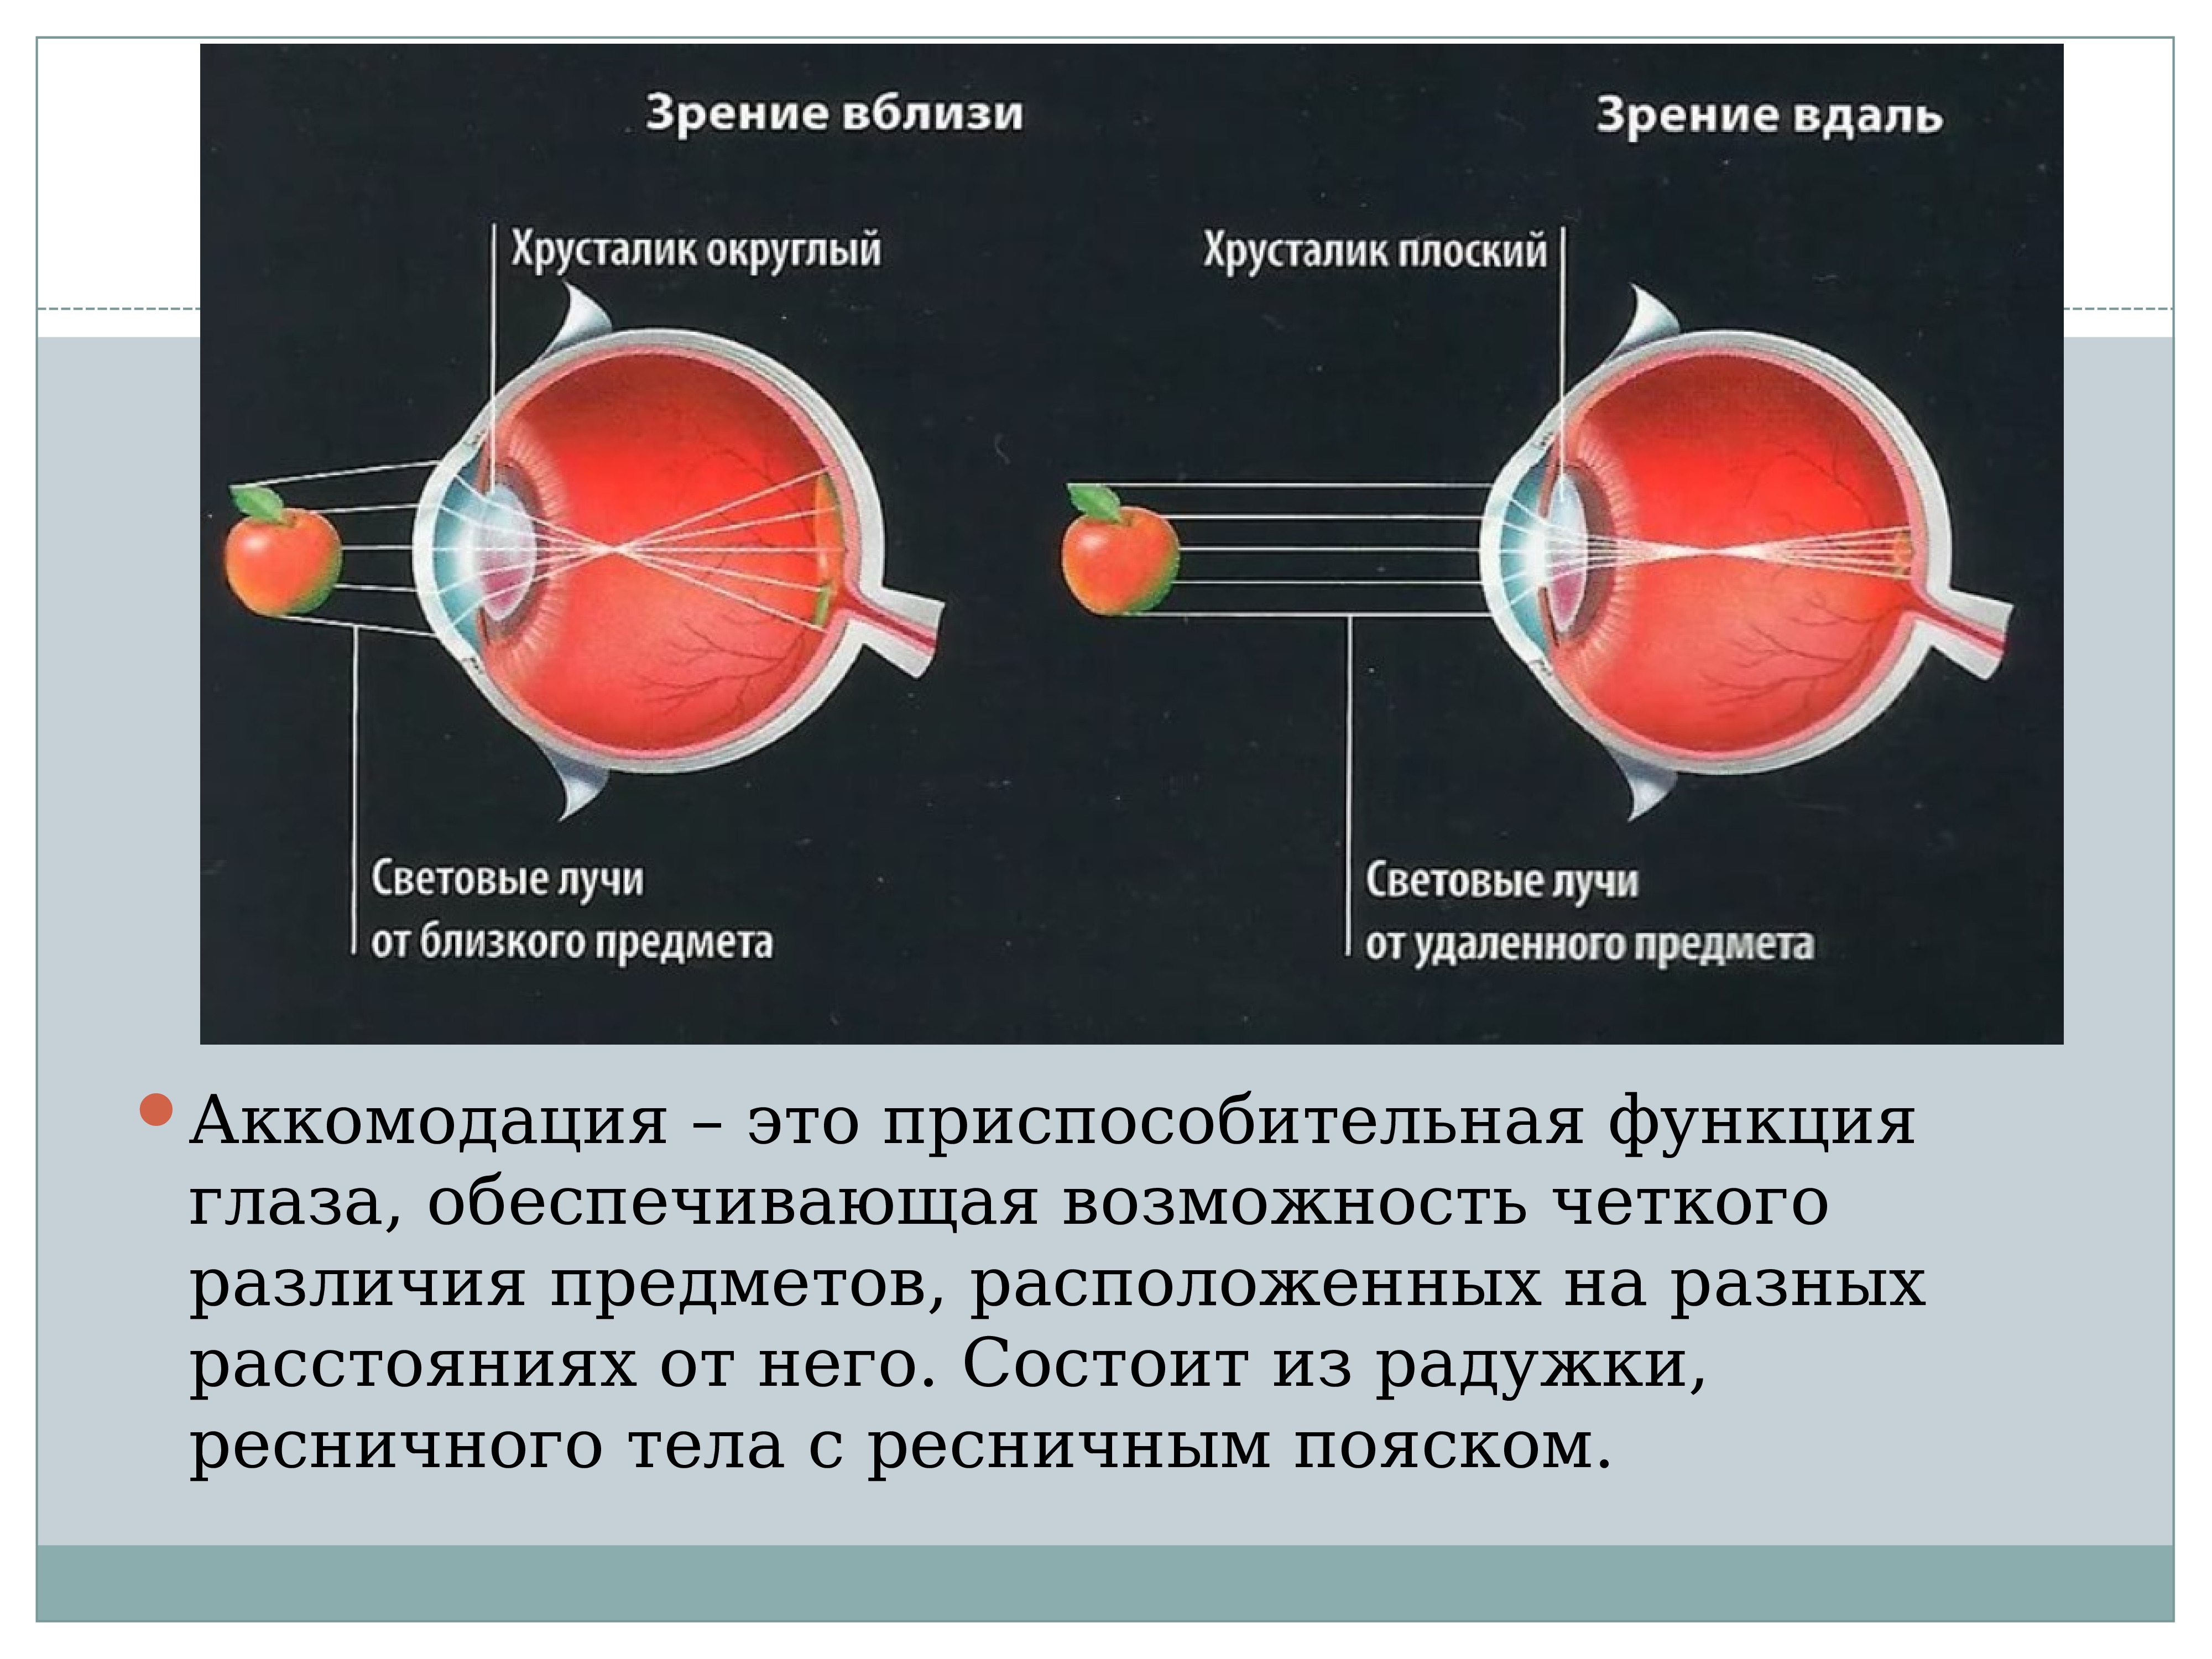 Аккомодационная система глаза